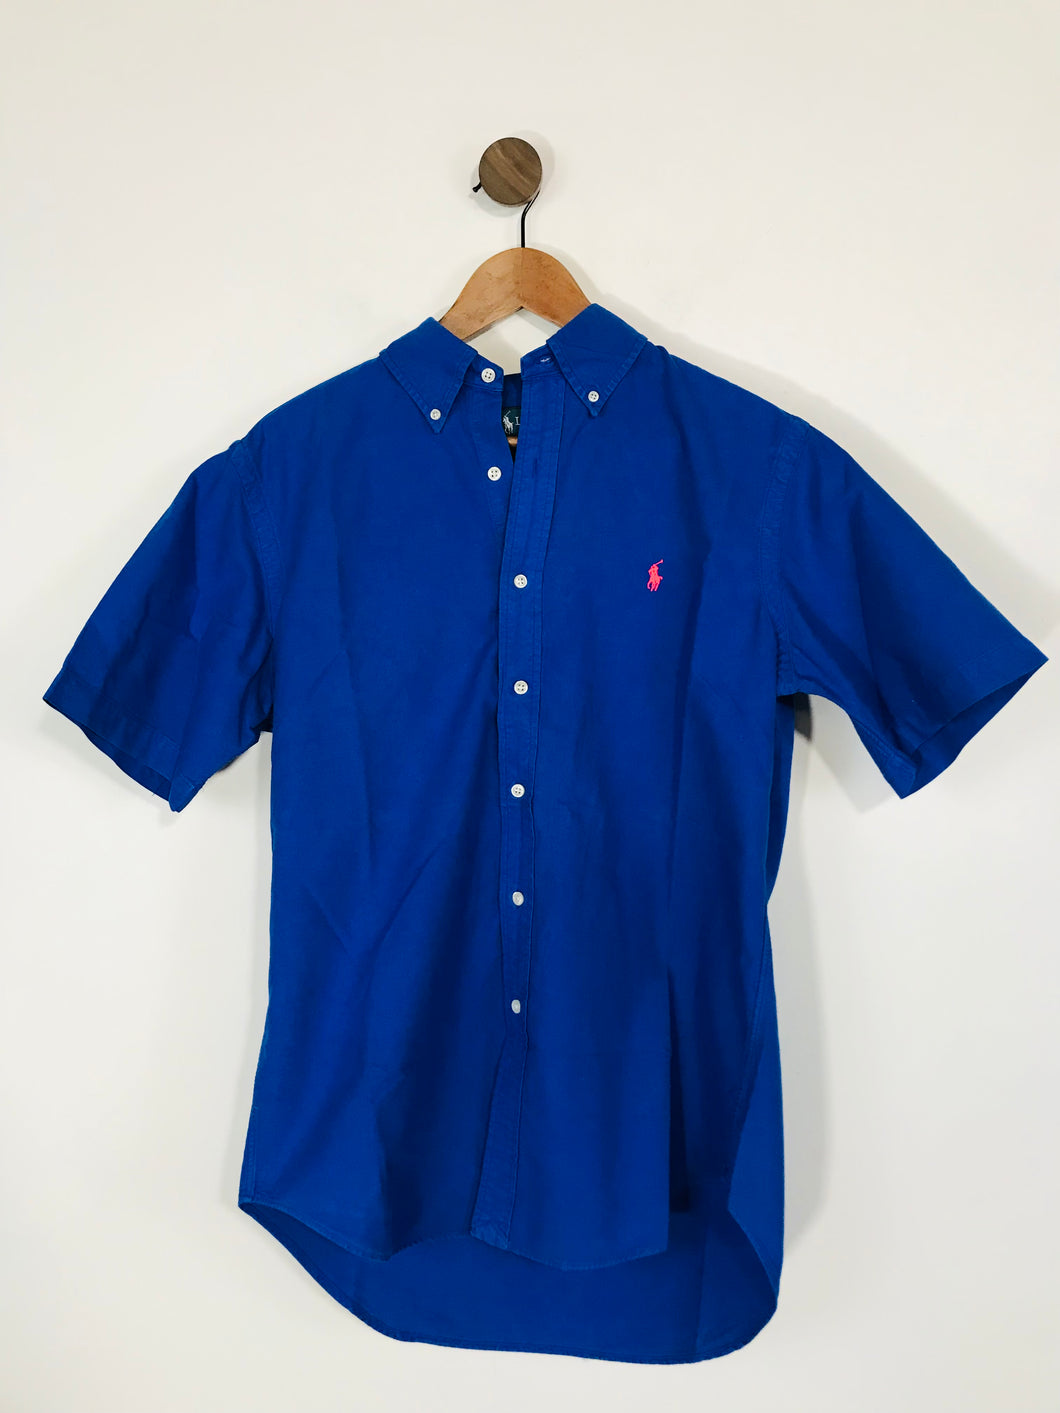 Ralph Lauren Women's Classic Fit Short Sleeve Button-Up Shirt | M UK10-12 | Blue